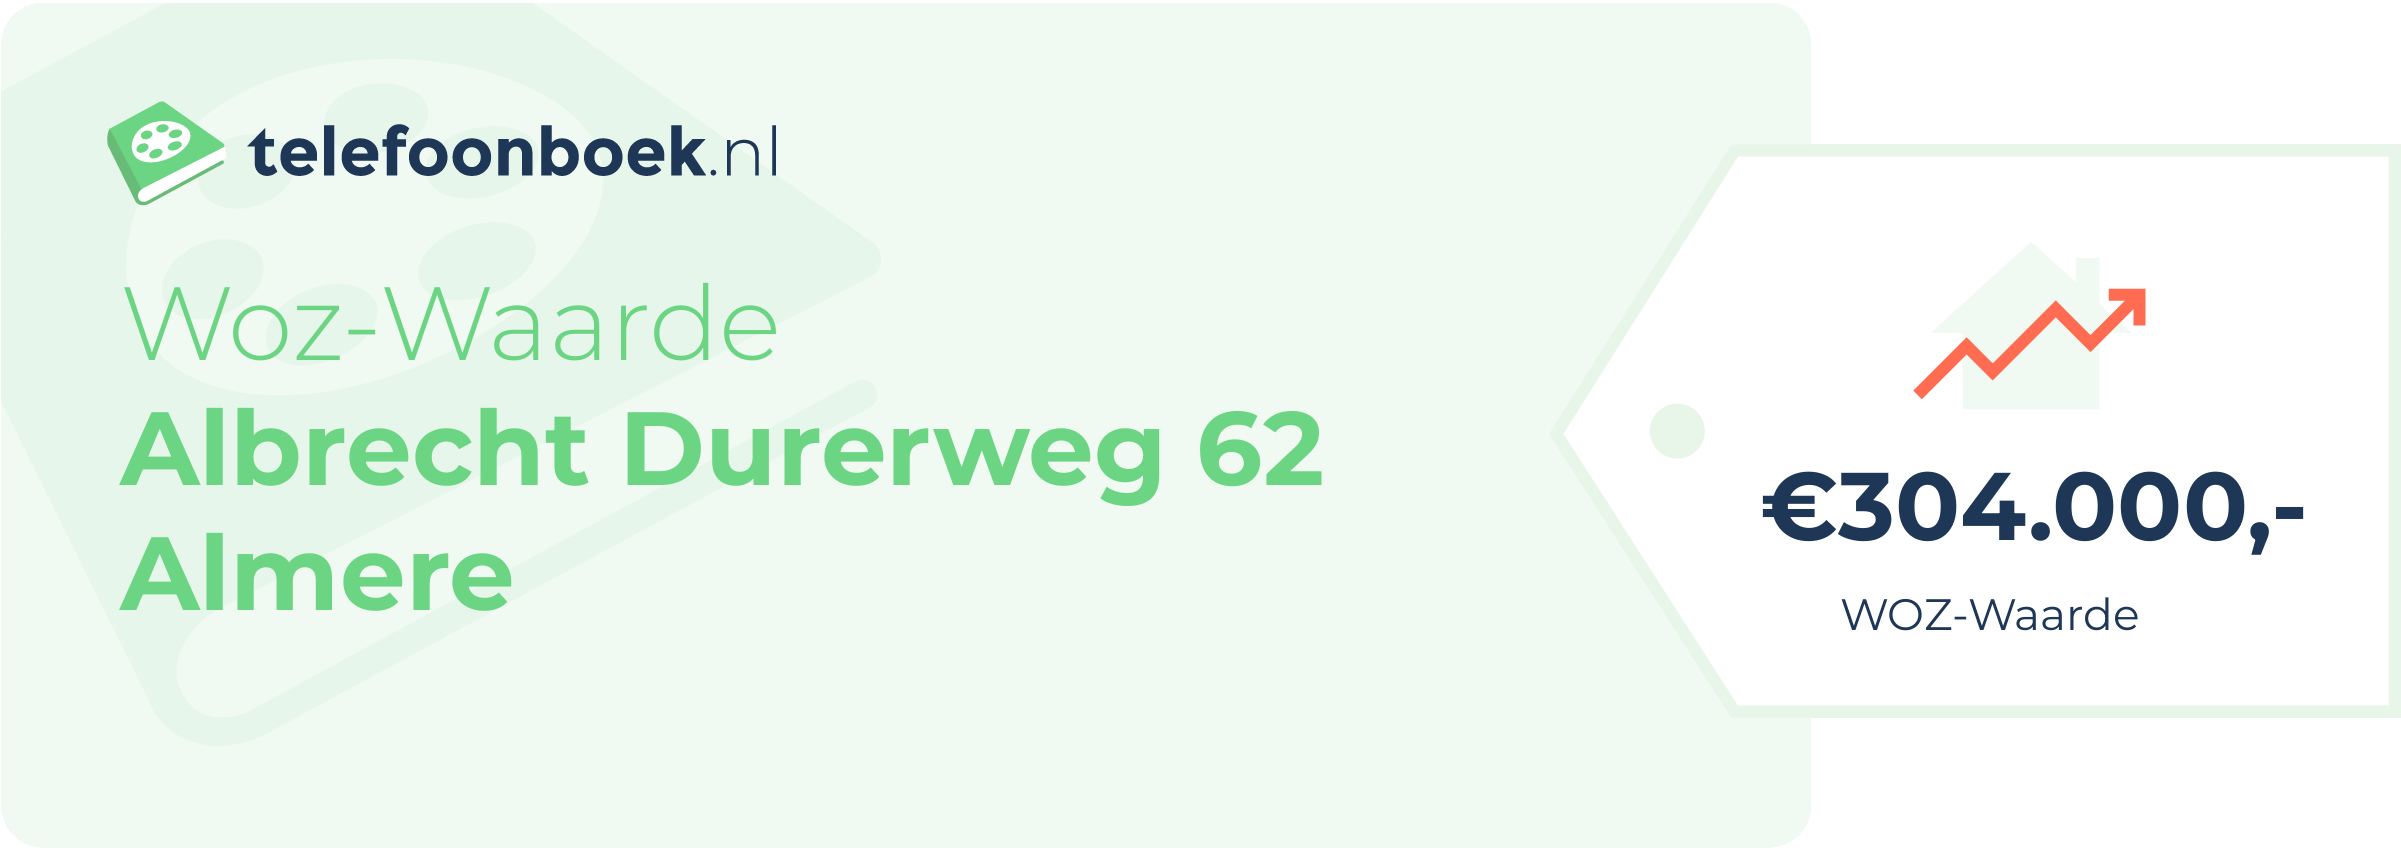 WOZ-waarde Albrecht Durerweg 62 Almere